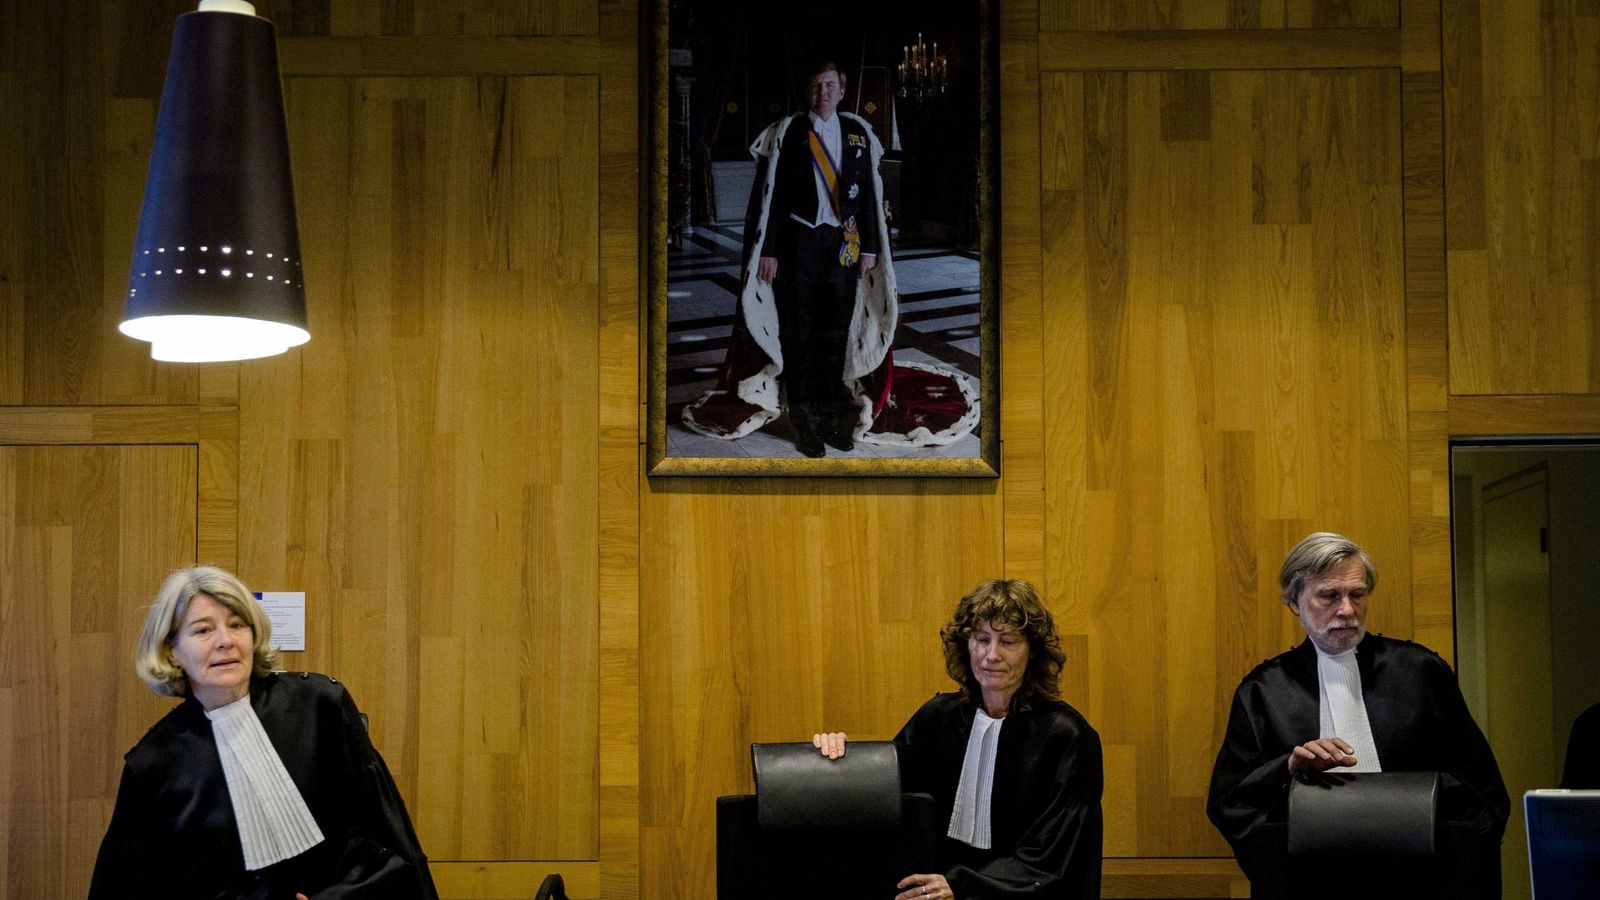 Foto: Los jueces toman asiento antes de retomar el juicio entre la Federación rusa y la petrolera Yukos Universal en la Corte Permanente de Arbitraje de La Haya. (EFE)